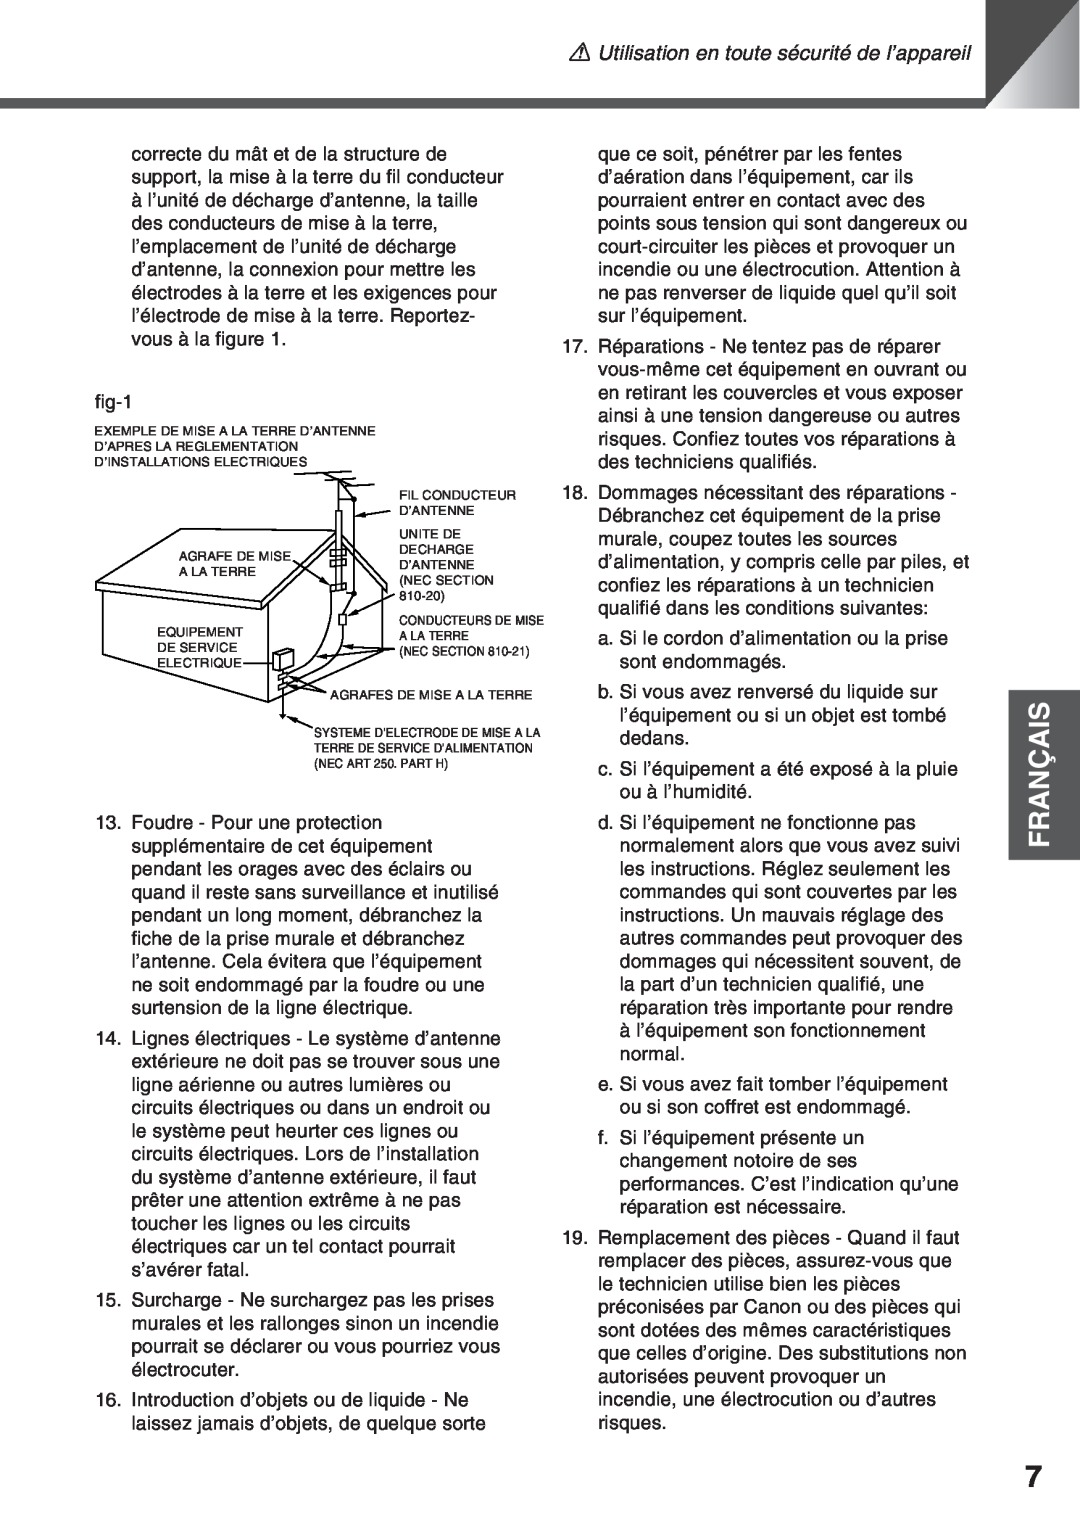 Canon VC-C50i, VC-C50IR instruction manual Français, aUtilisation en toute sécurité de l’appareil, fig-1 